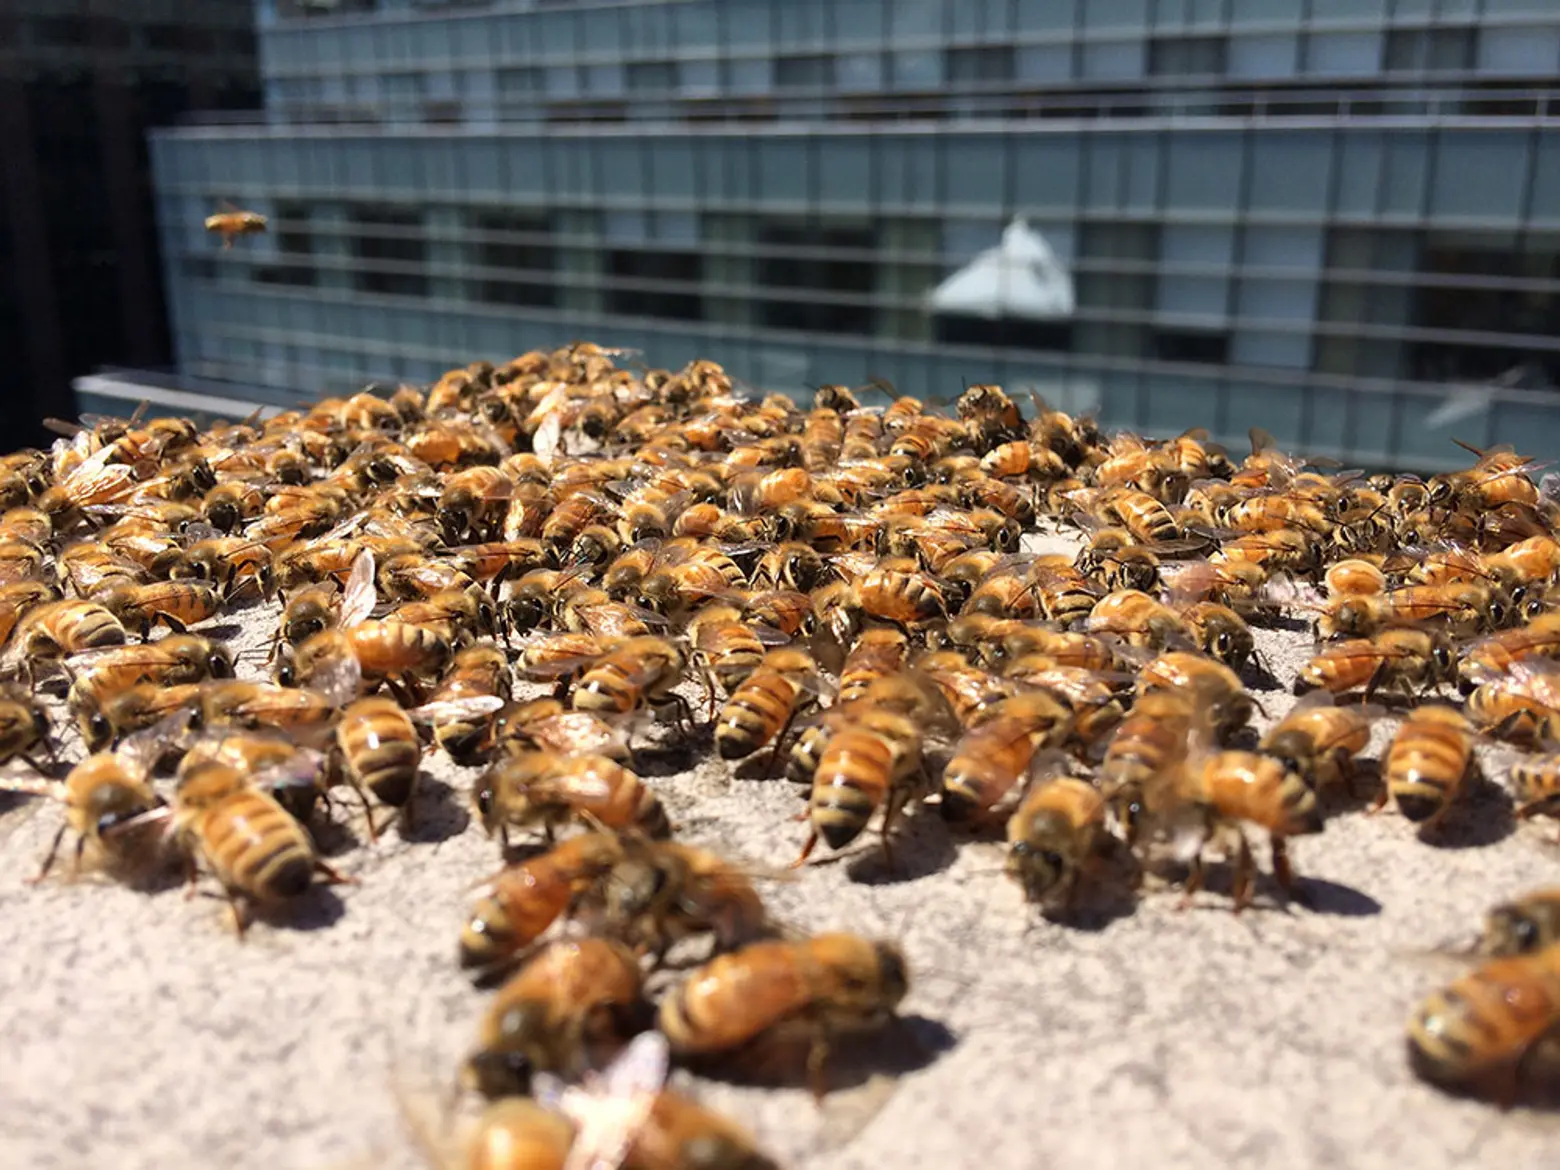 andrew's honey, local honey, nyc honey, honey made in new york, urban beekeeping, urban honey, andrew cote